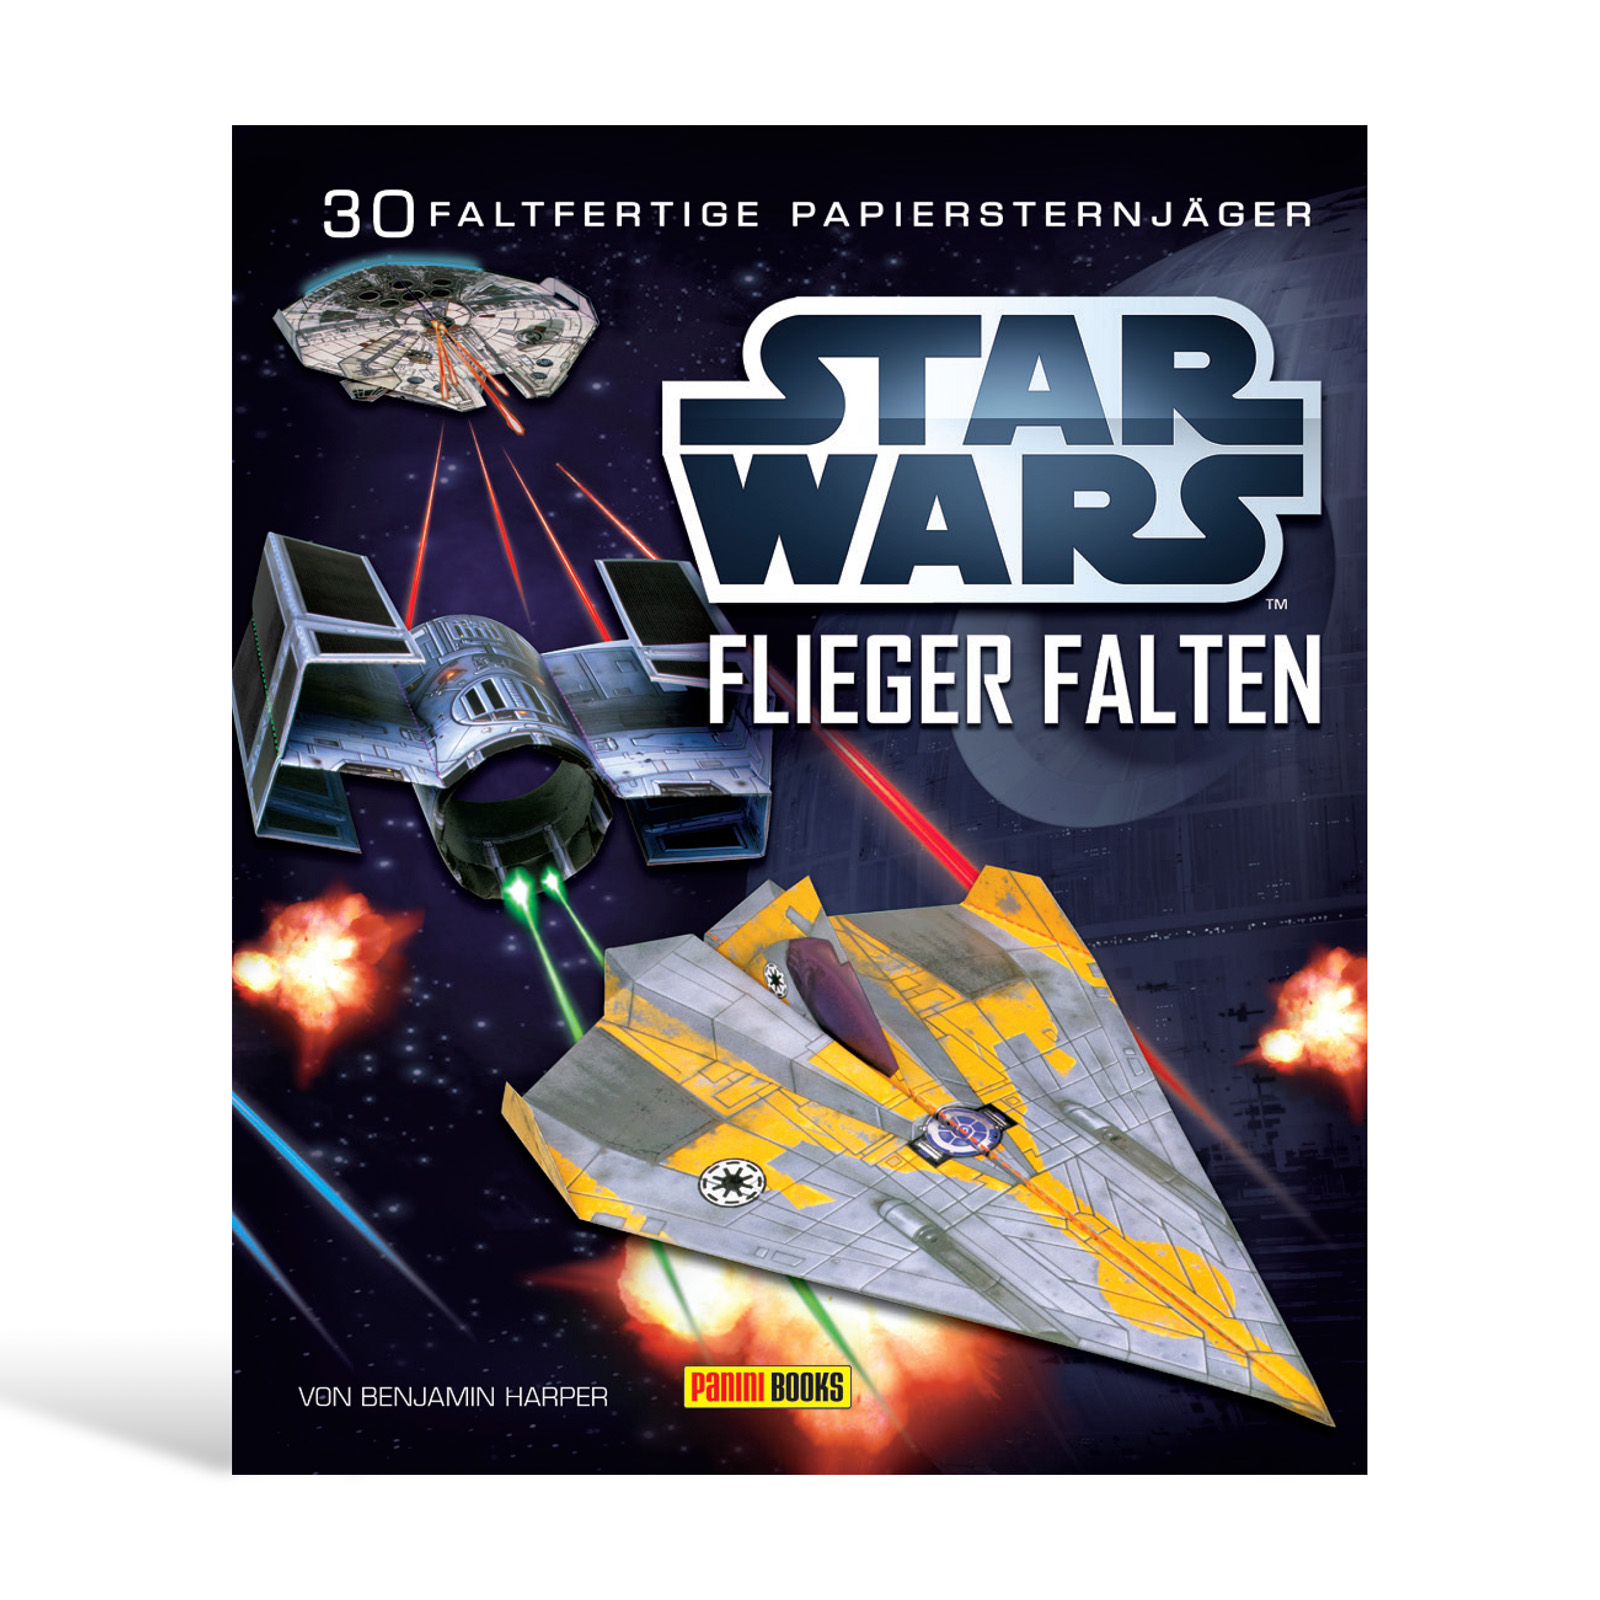 Star Wars - Flieger falten